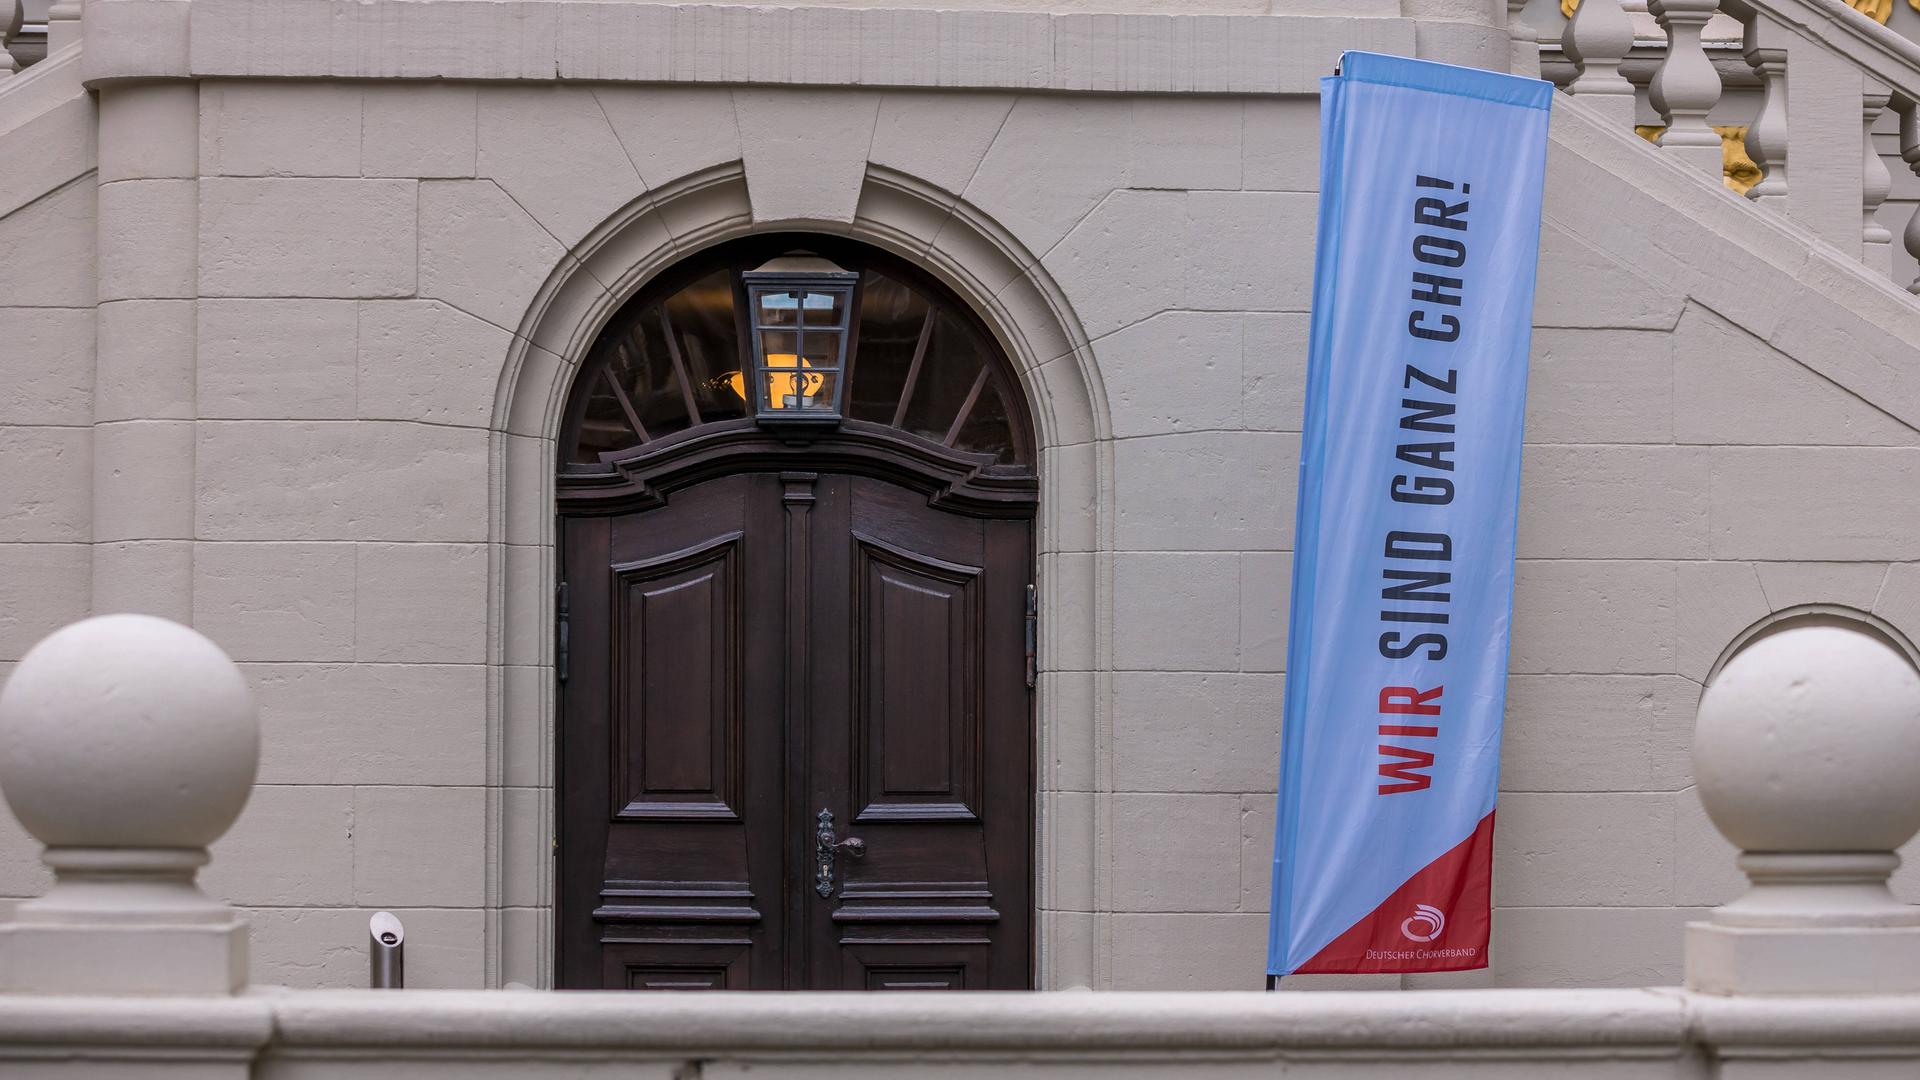 Ein Banner an der Alten Börse trägt den Schriftzug "Wir sind ganz Chor".